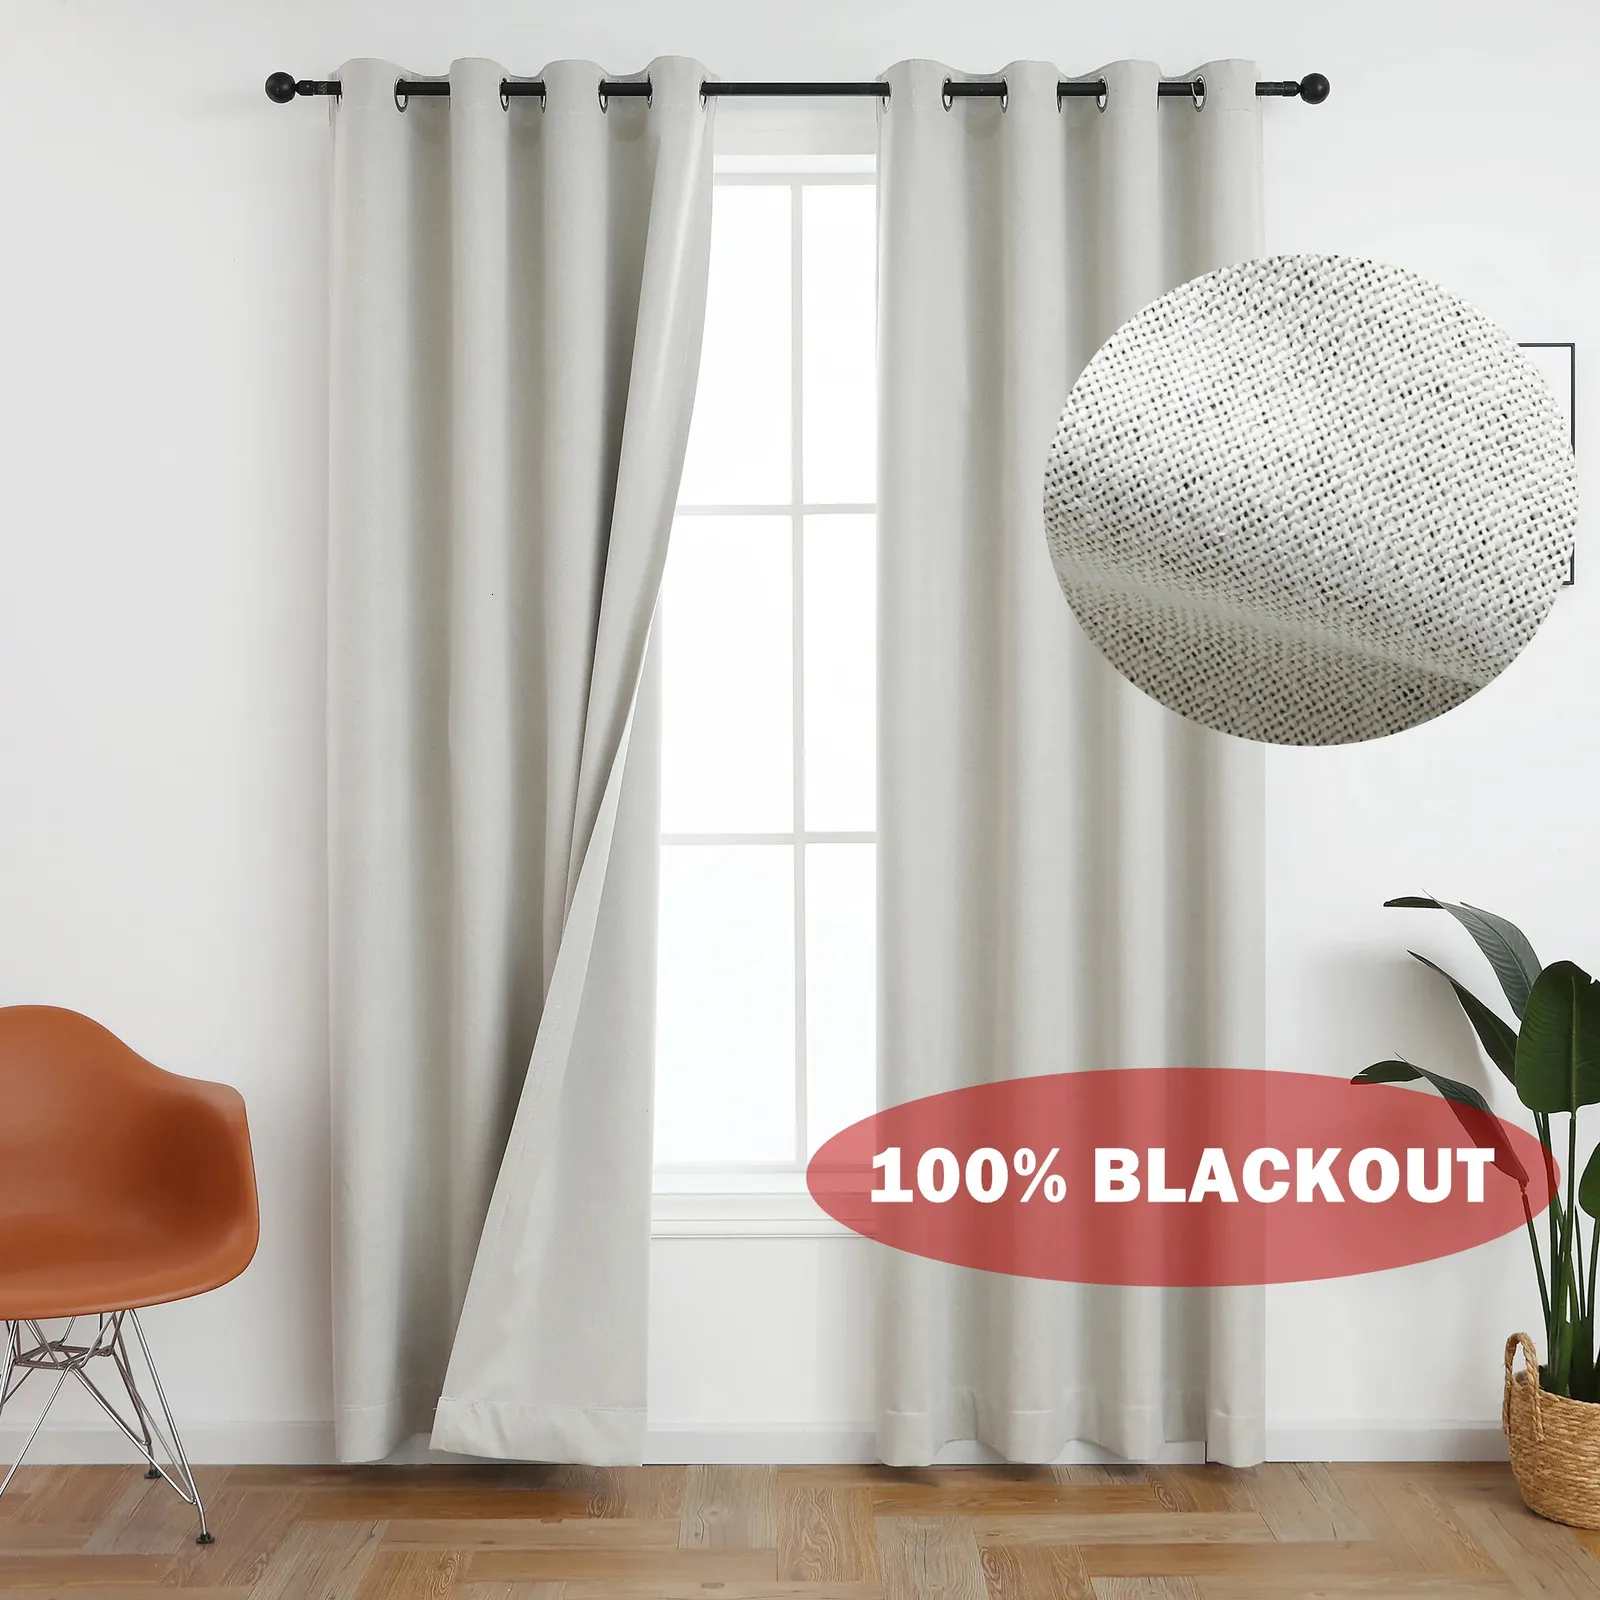 310cm de altura 100% blackout cor sólida à prova de som cortina blackout falso linho cortinas para quarto sala estar janela 240119